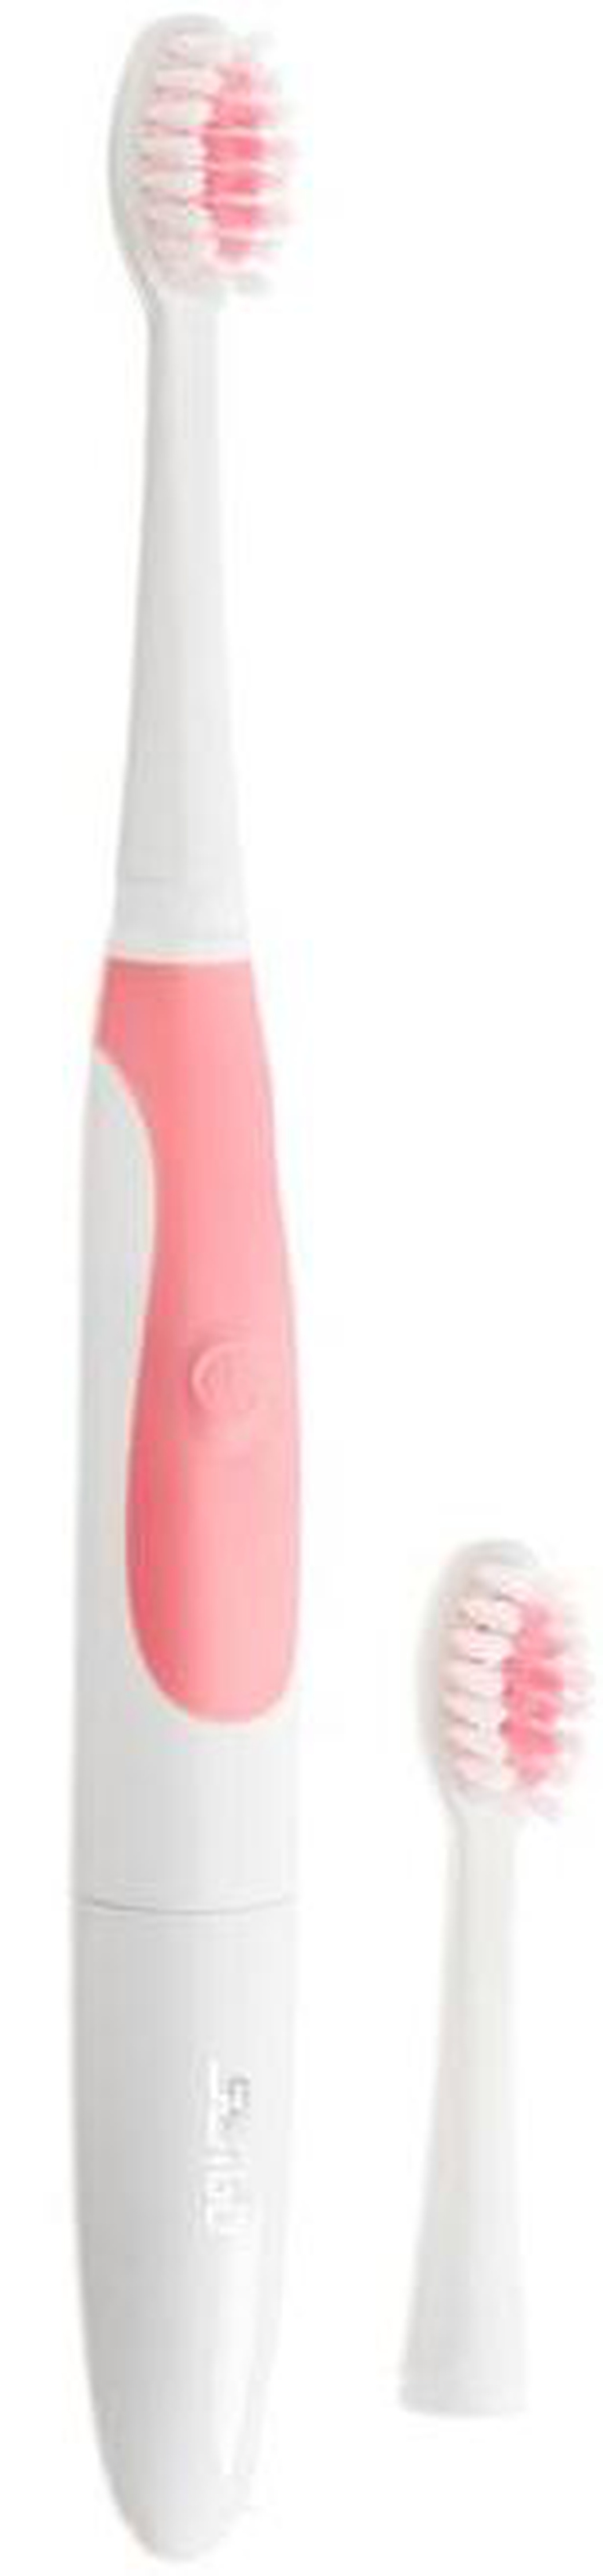 Электрическая зубная щетка SEAGO SG-920, розовый фото